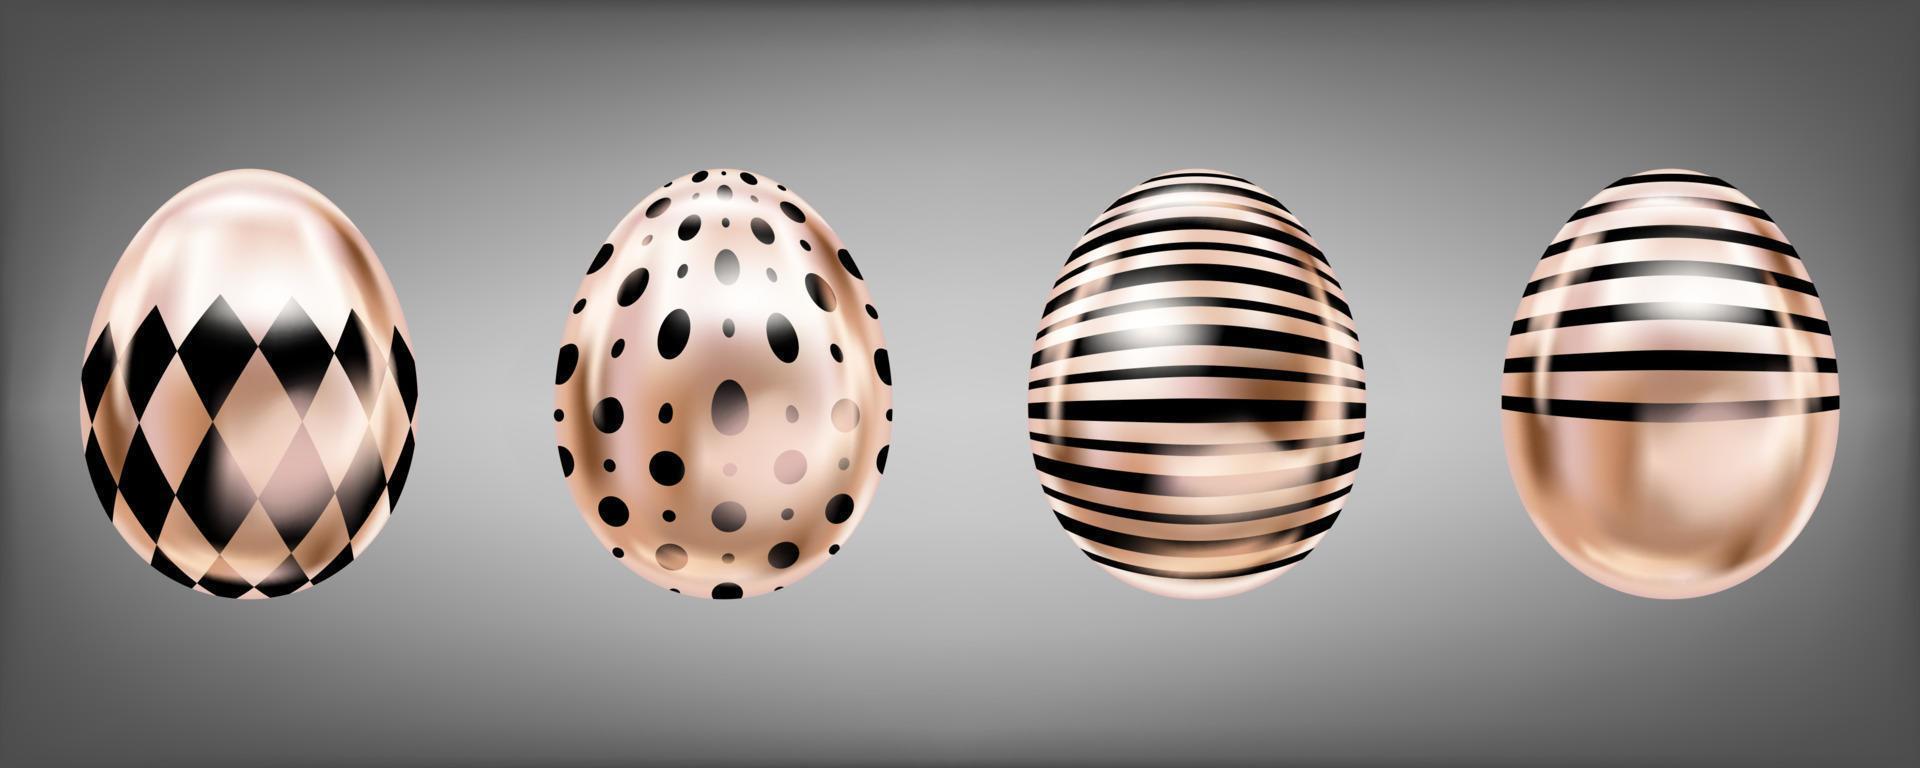 fyra ögonkast metalliska ägg i rosa färg med svart gum, prickar och ränder. isolerade föremål för påskdekoration vektor